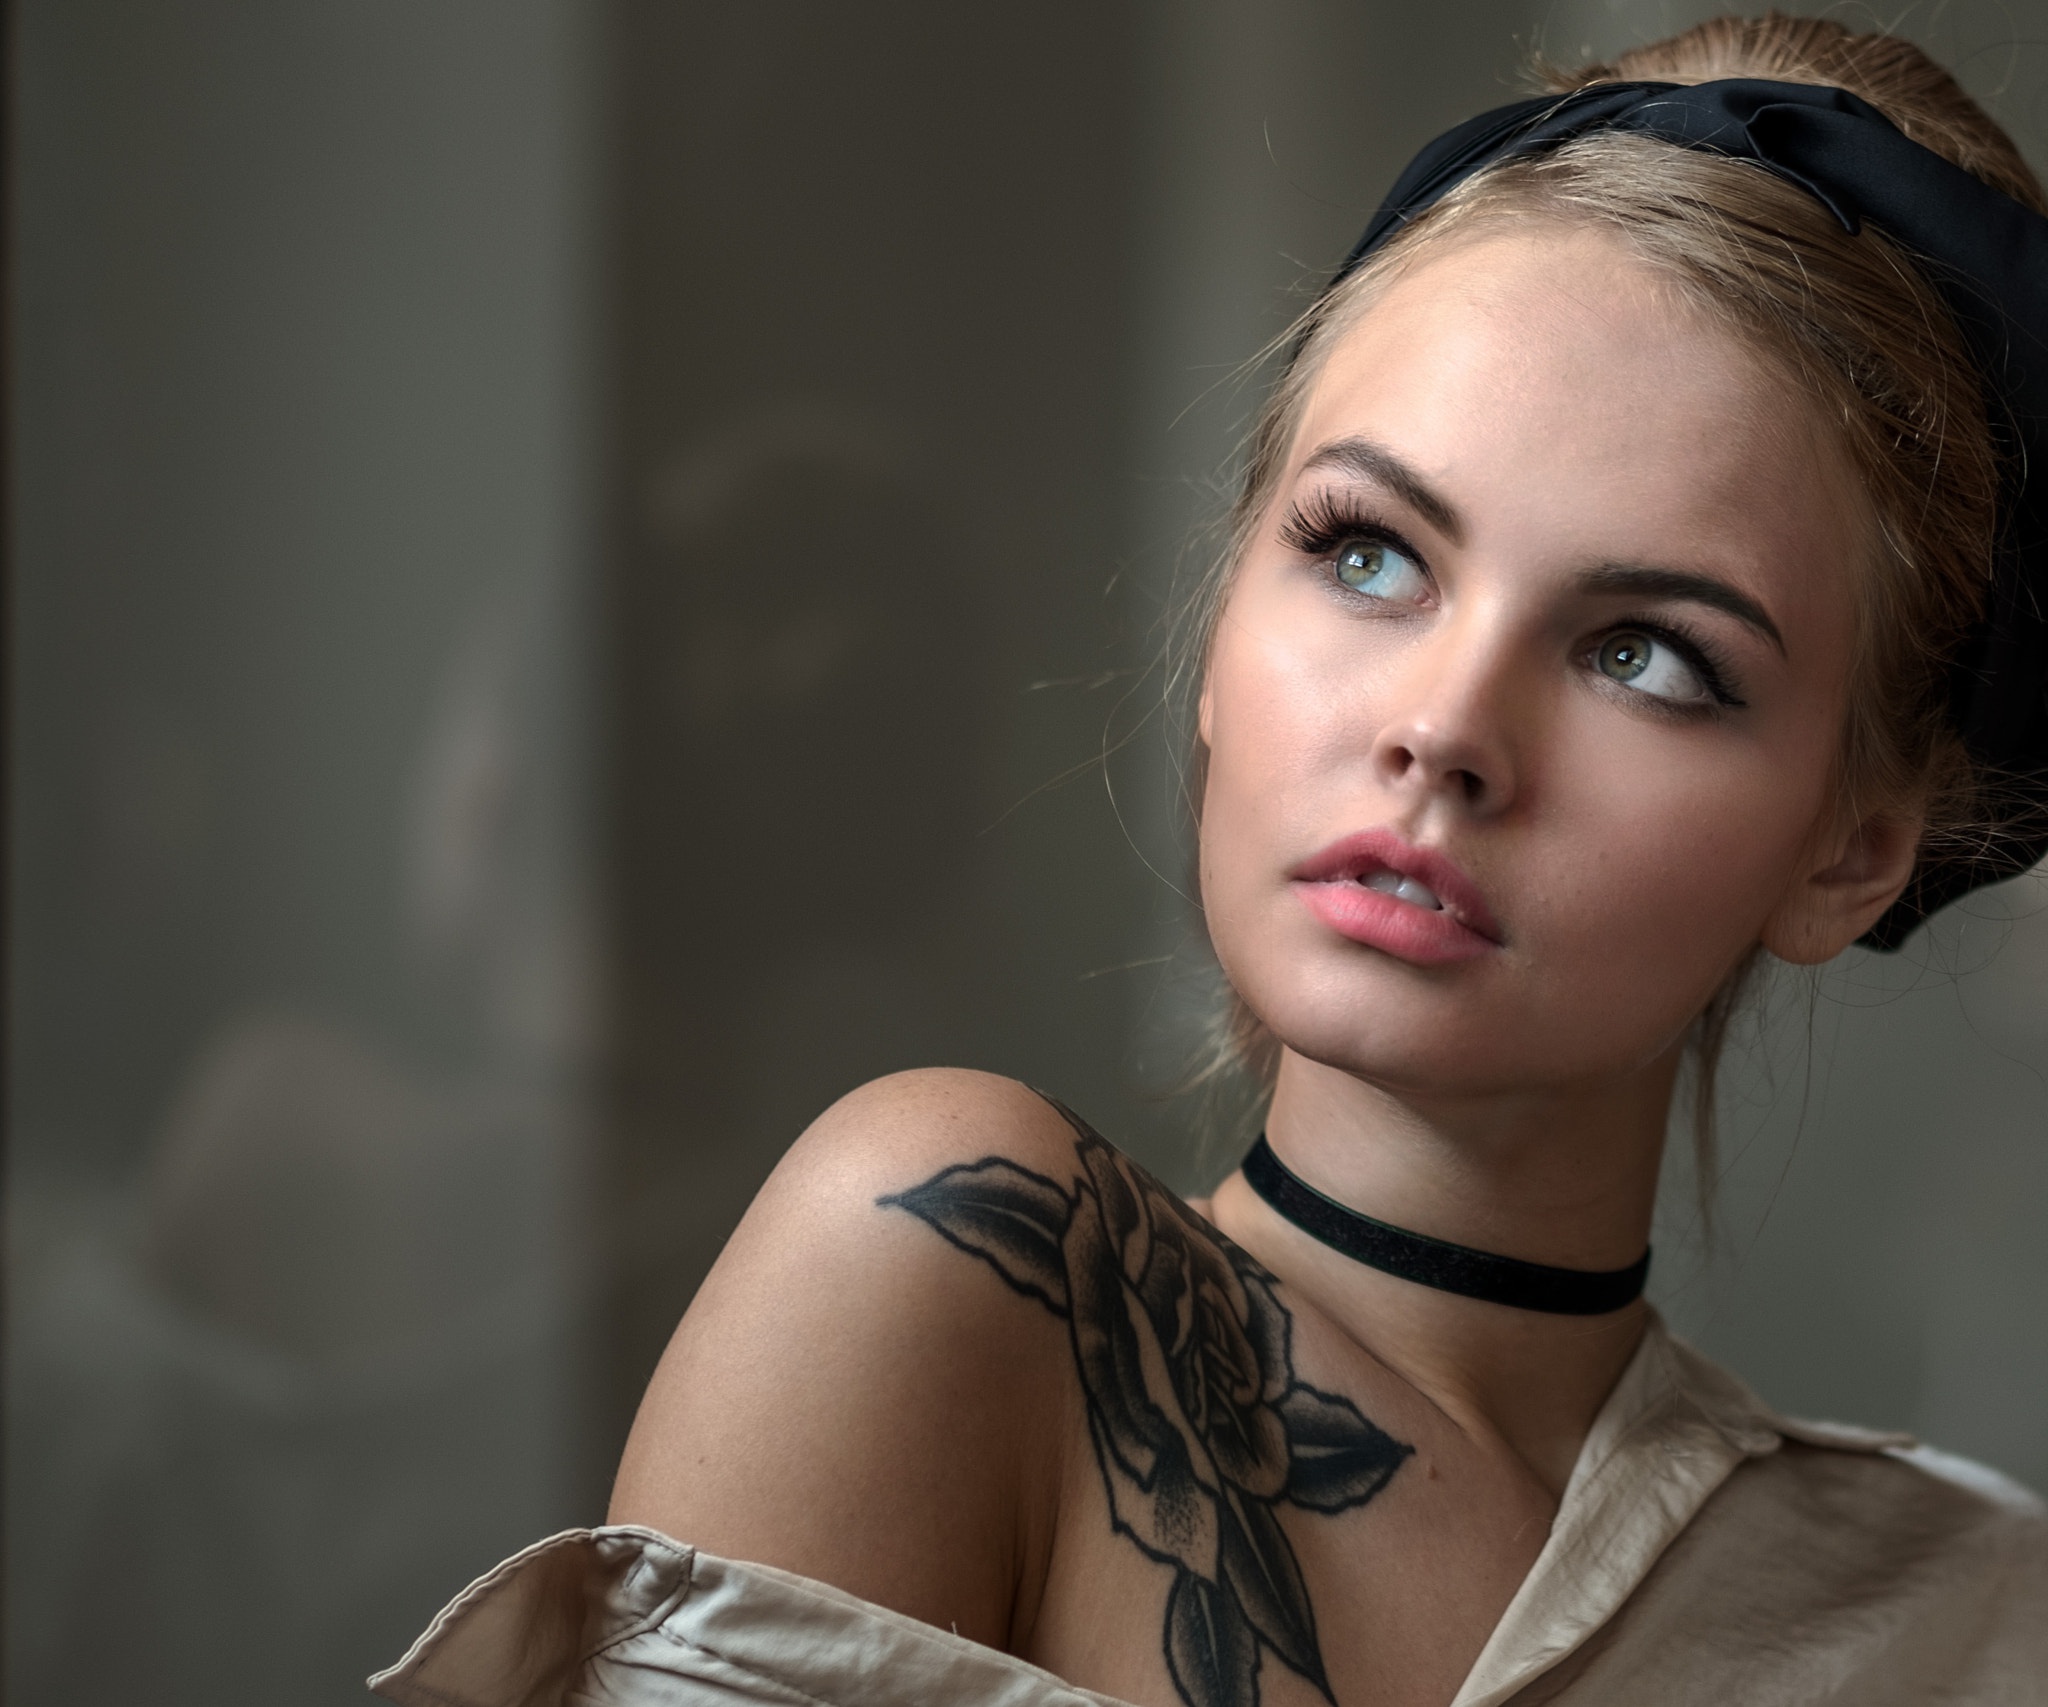 Russian Tattoo Girl - HD Wallpaper 